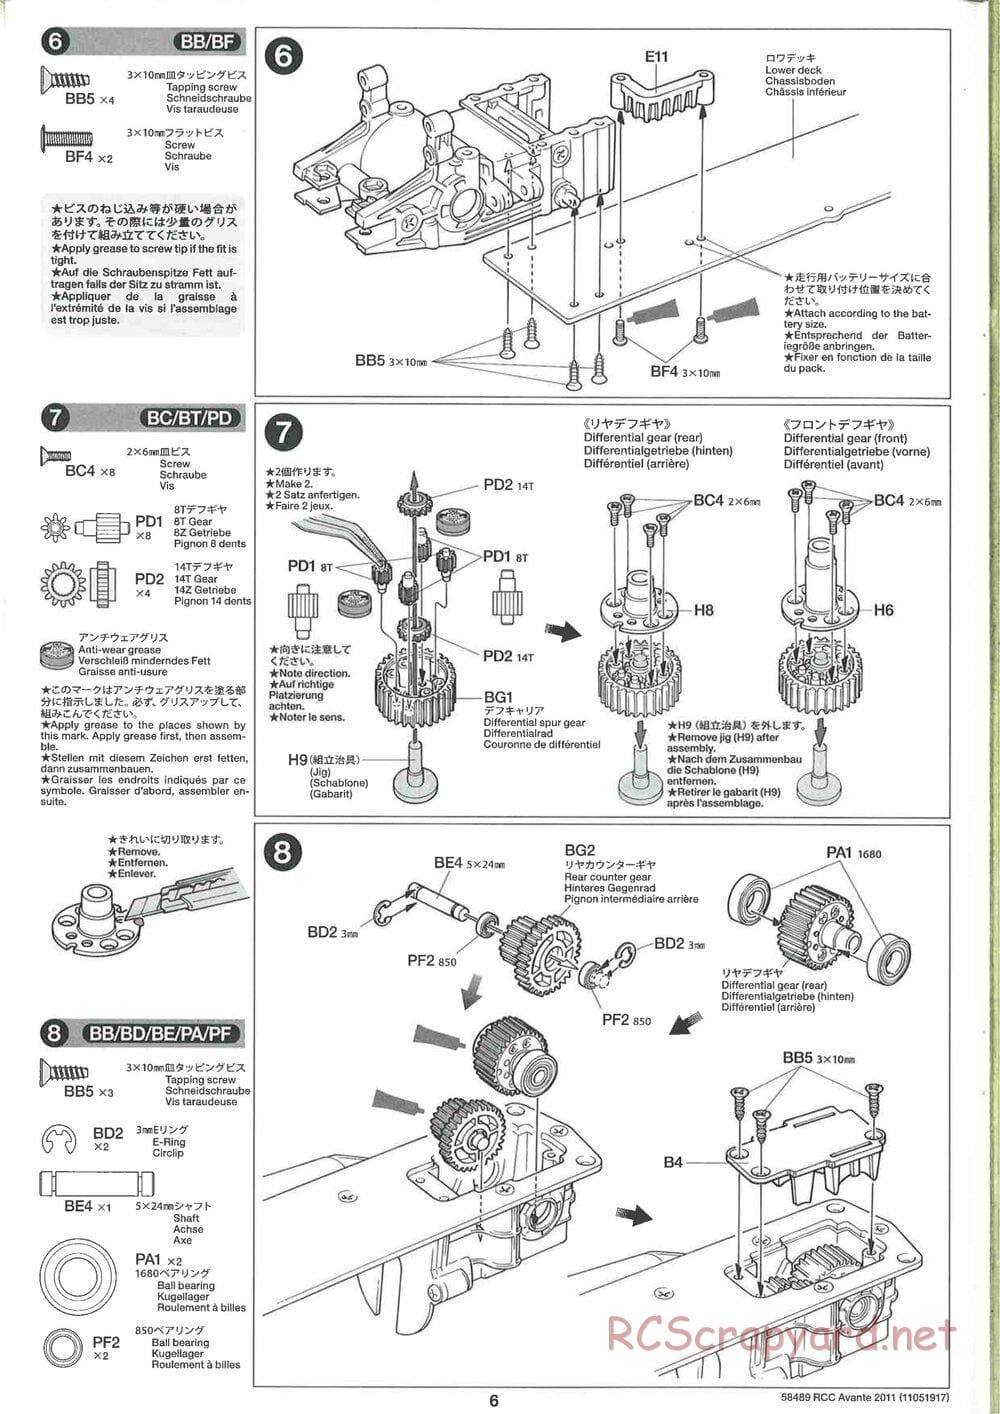 Tamiya - Avante 2011 - AV Chassis - Manual - Page 6